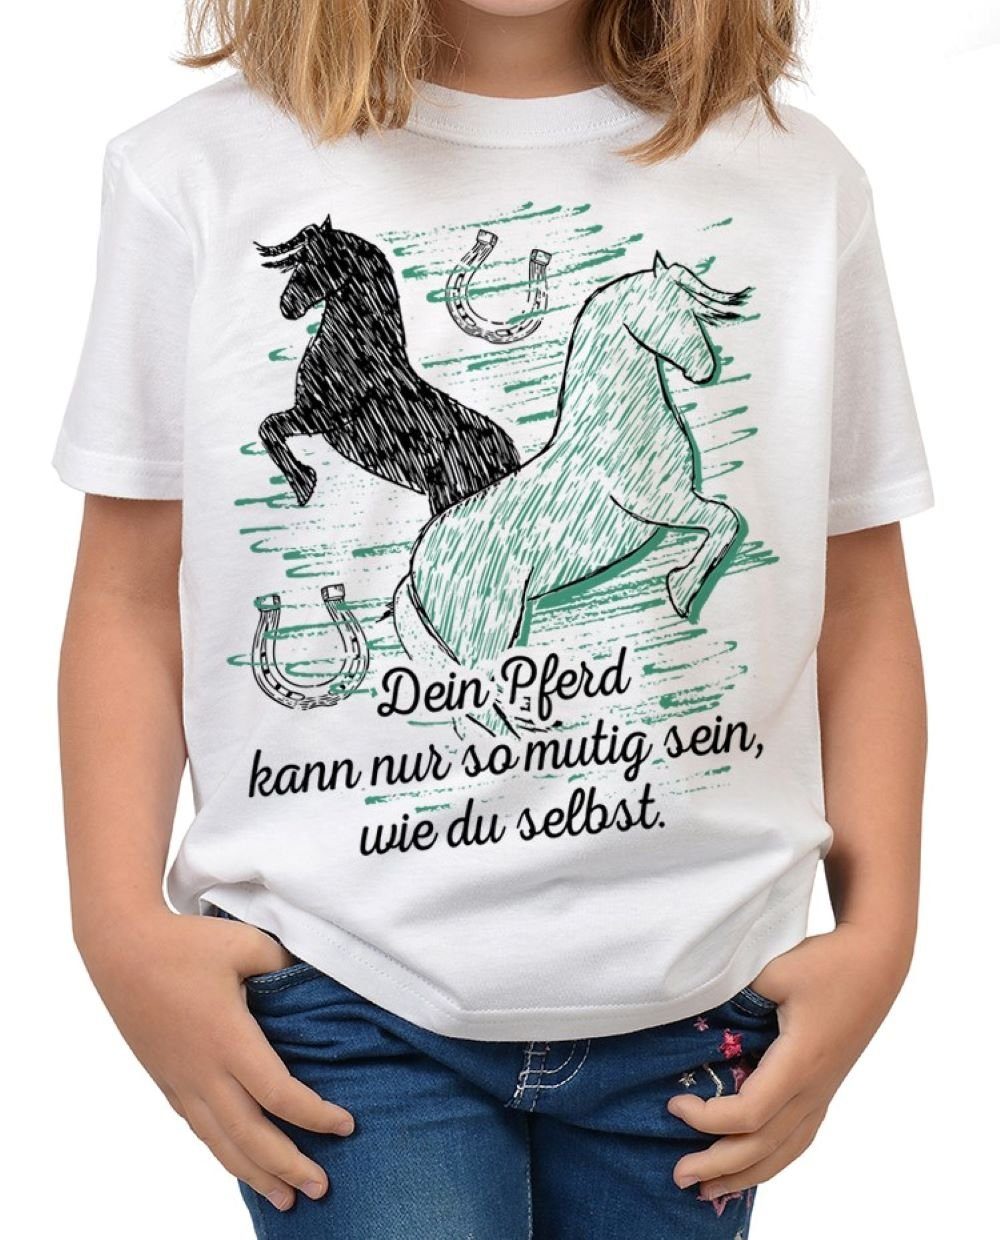 Motiv Dein Sprüche du Shirts nur Kinder Pferde T-Shirt Pferd - Shirt Kindershirt selbst Shirt mutig sein, Pferde : Tini Sprüche so wie kann